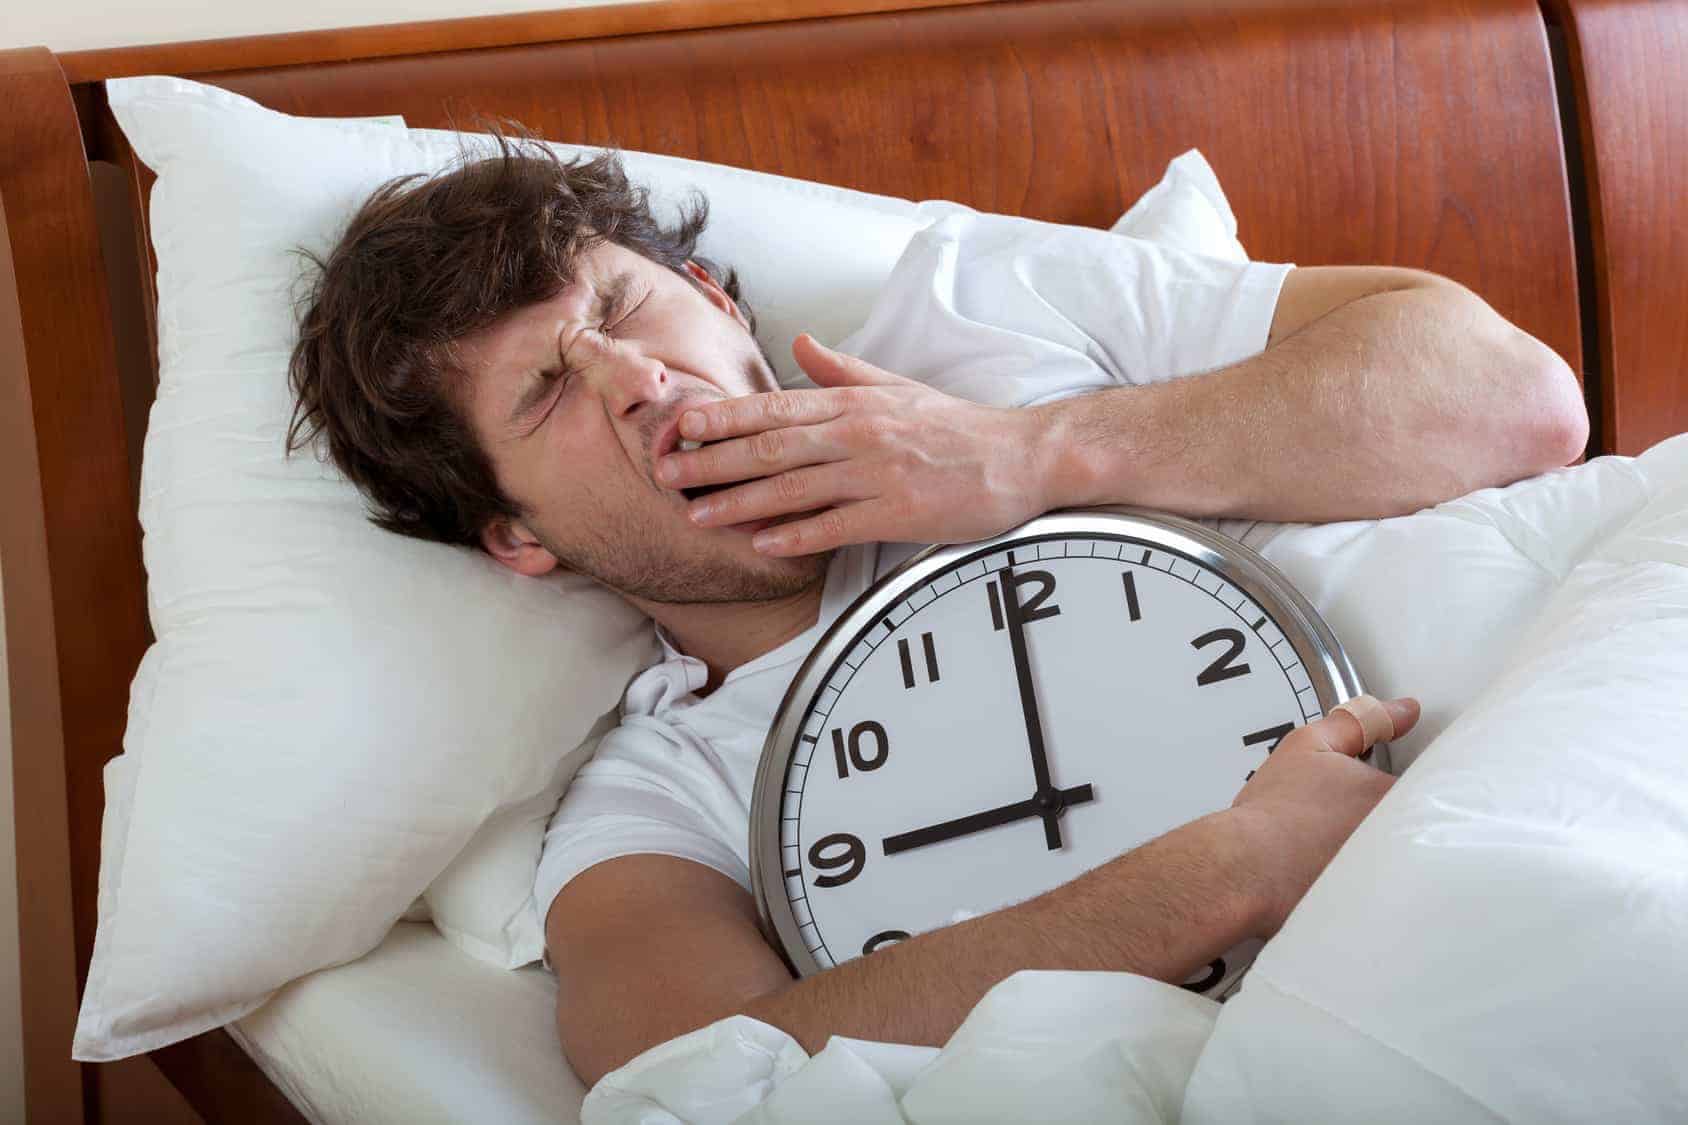 ما مخاطر النوم لفترة طويلة في عطلة نهاية الأسبوع؟